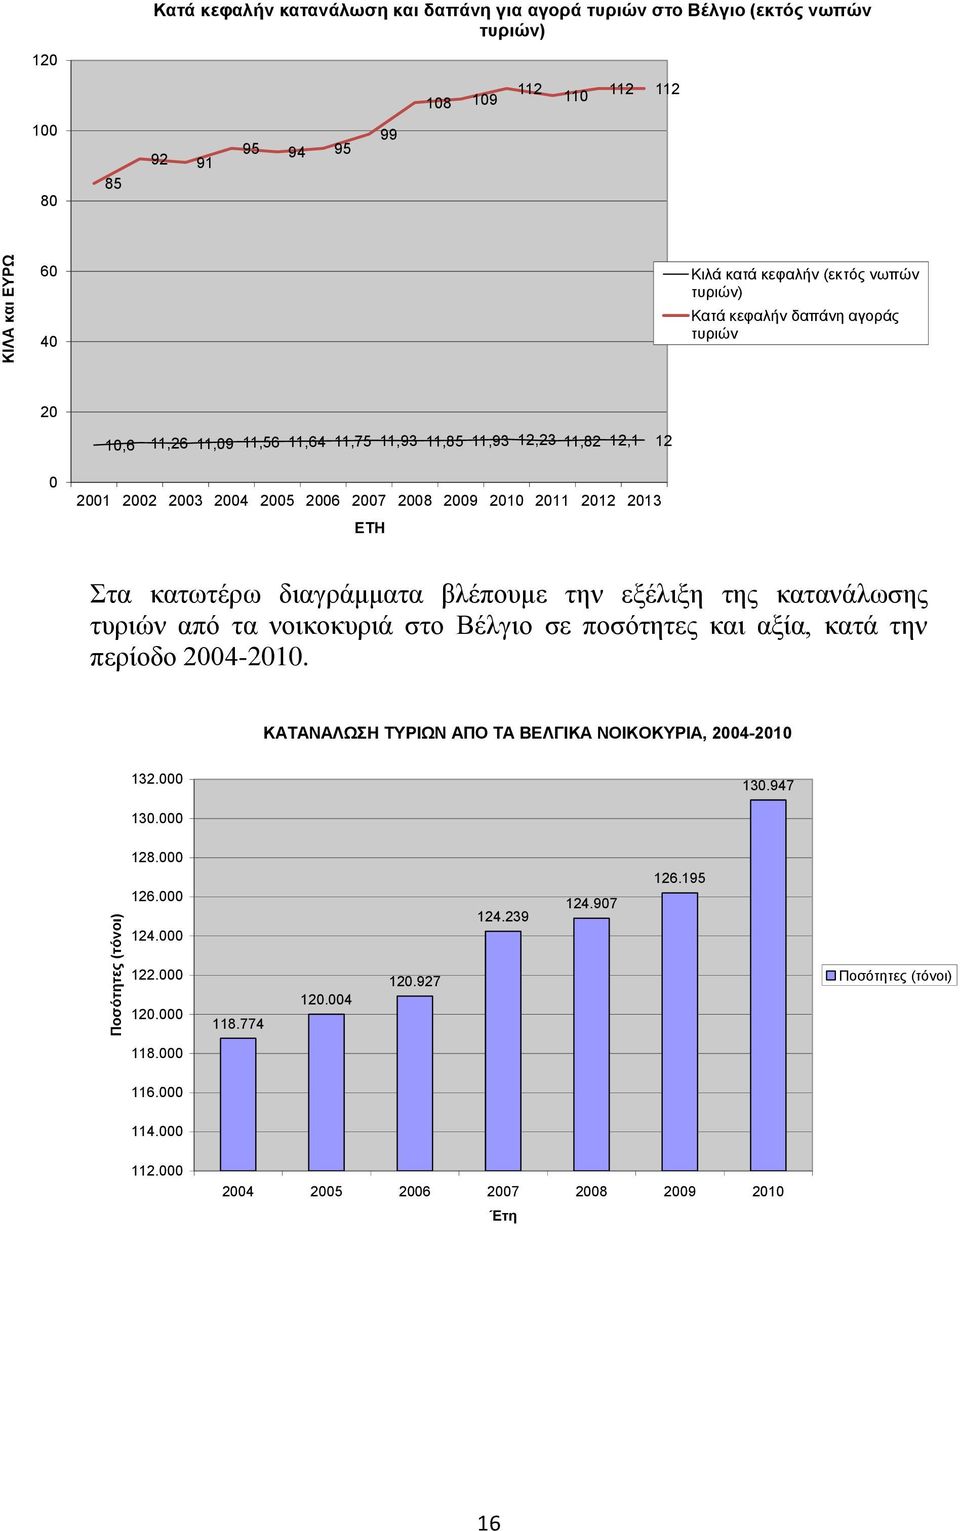 ΕΤΗ Στα κατωτέρω διαγράμματα βλέπουμε την εξέλιξη της κατανάλωσης τυριών από τα νοικοκυριά στο Βέλγιο σε ποσότητες και αξία, κατά την περίοδο 2004-2010.